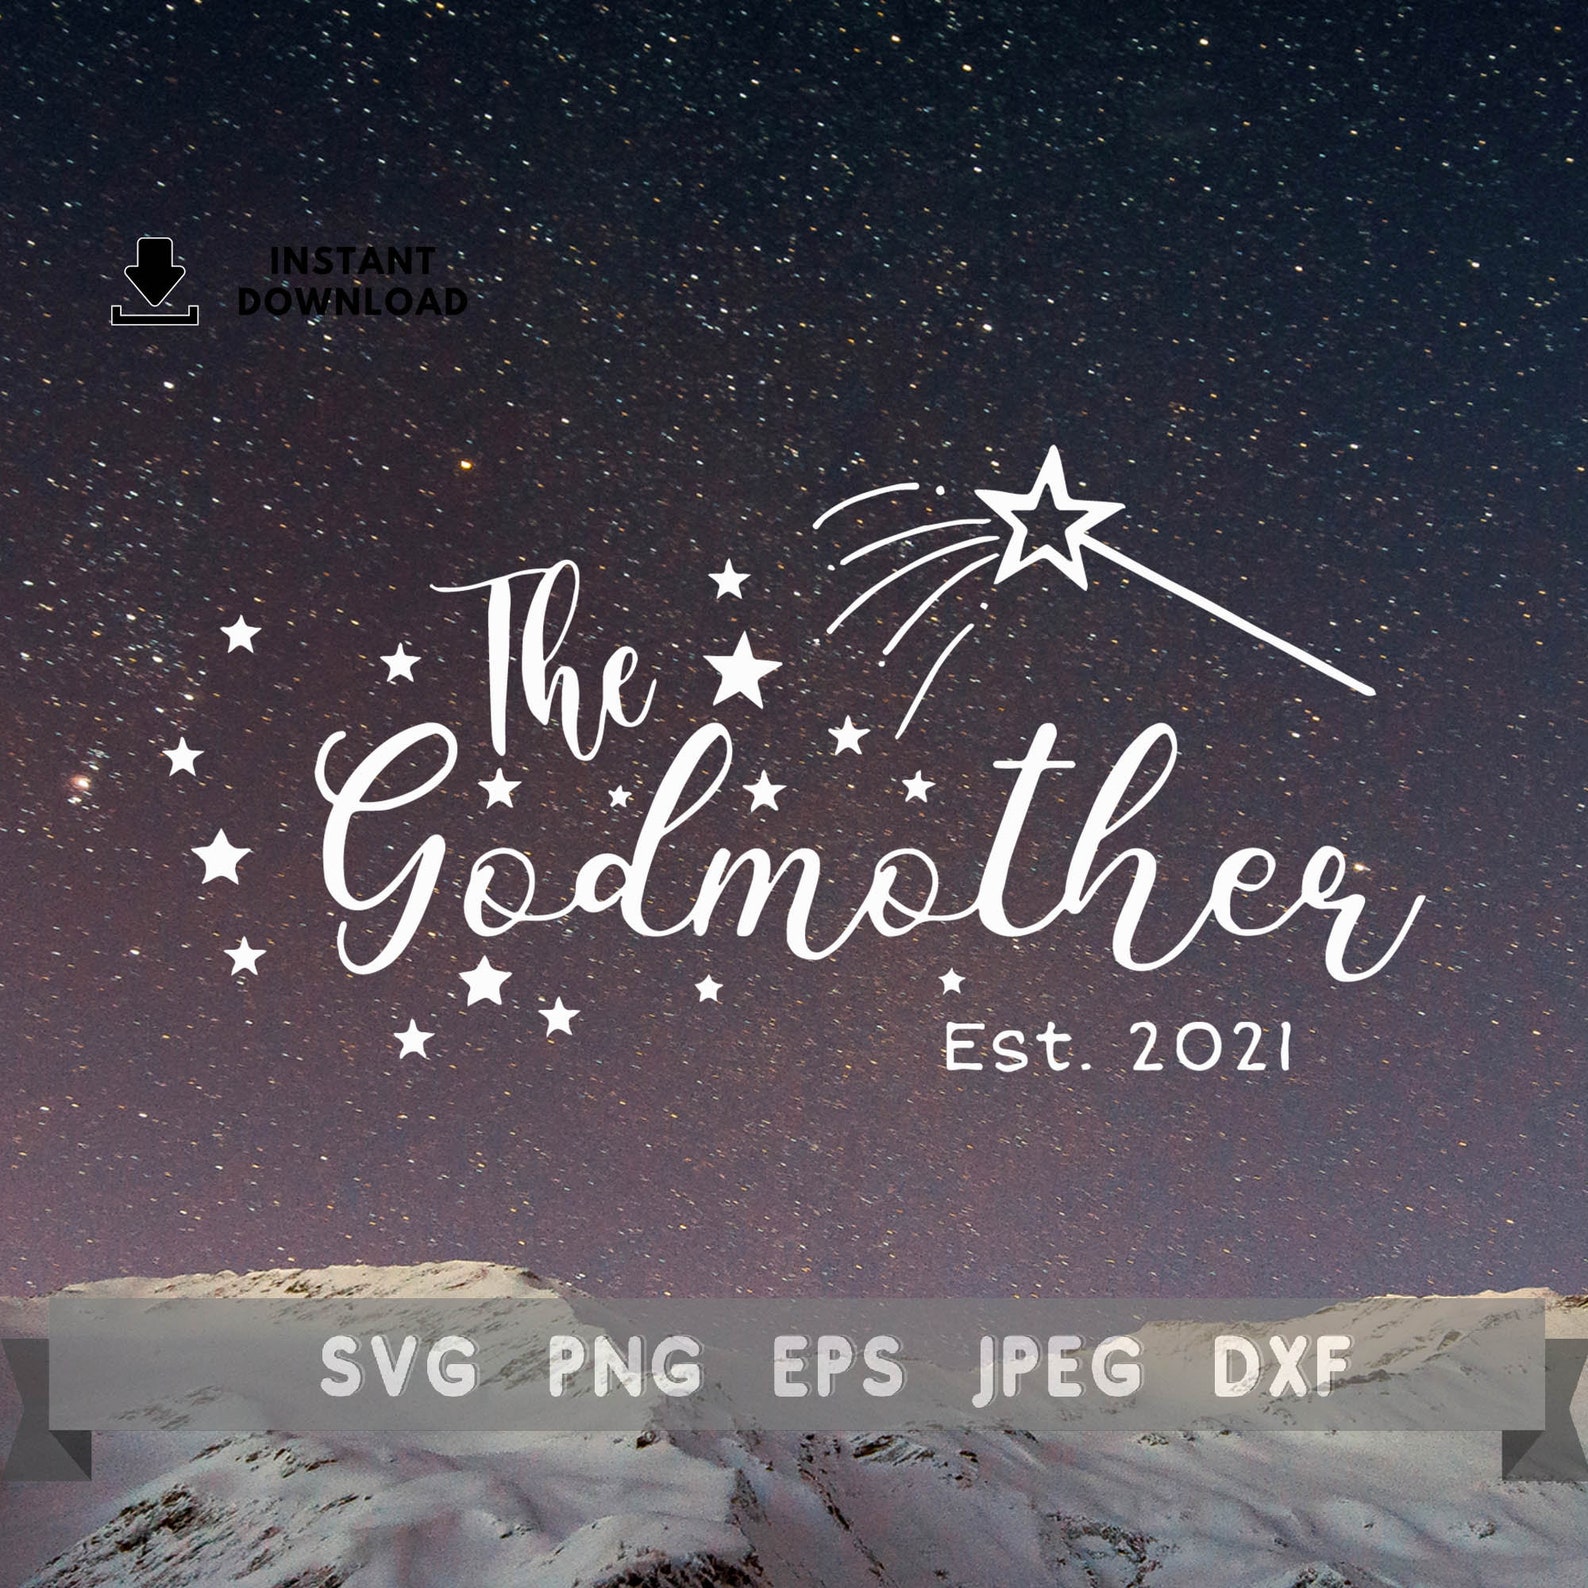 Download The Godmother svg Godmother Established 2021 SVG Baptism ...